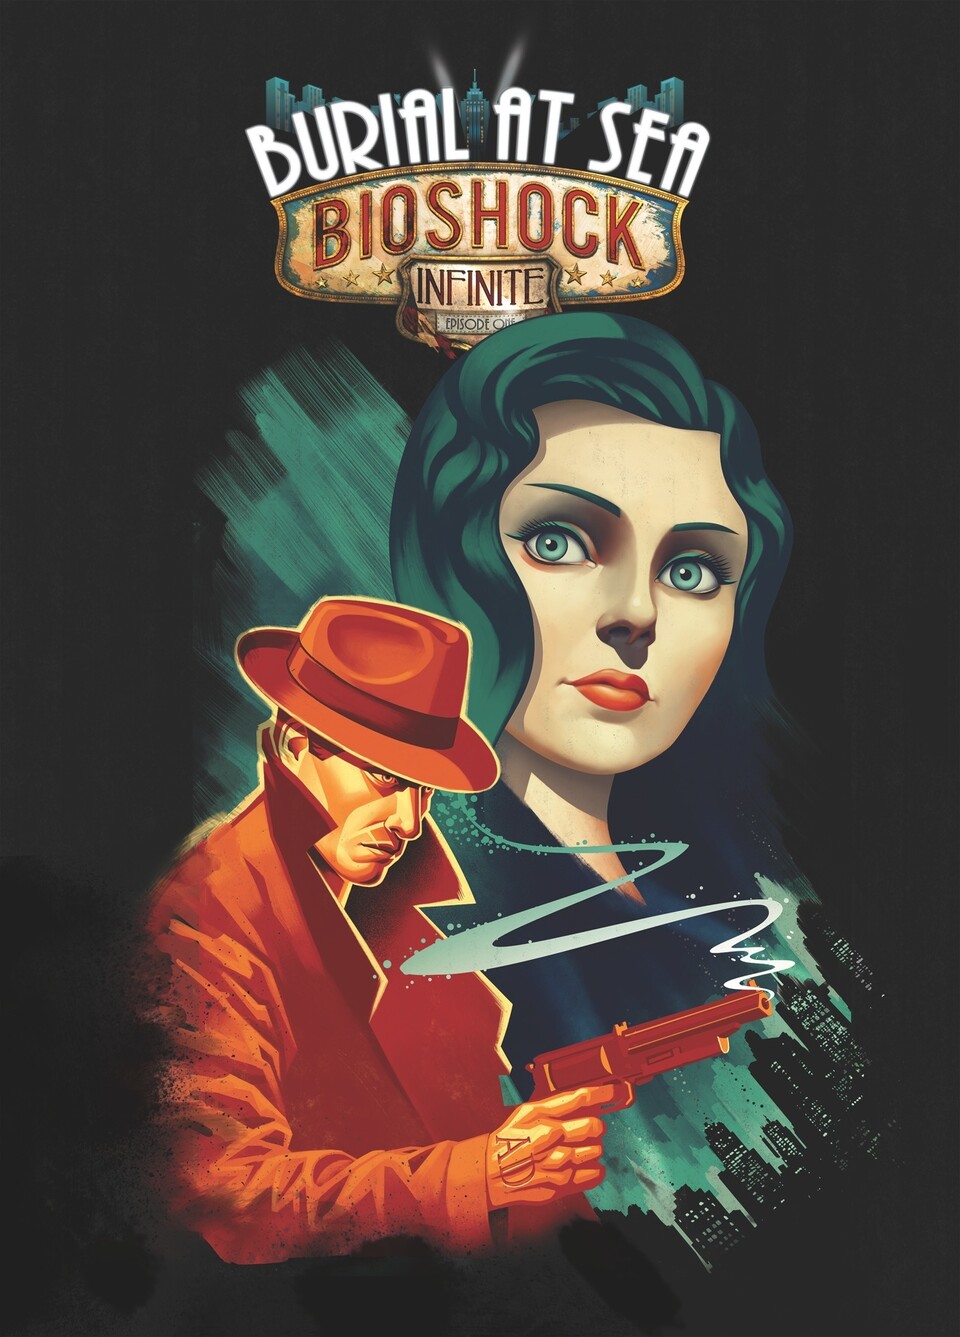 BioShock Infinite: Burial at Sea - Artwork